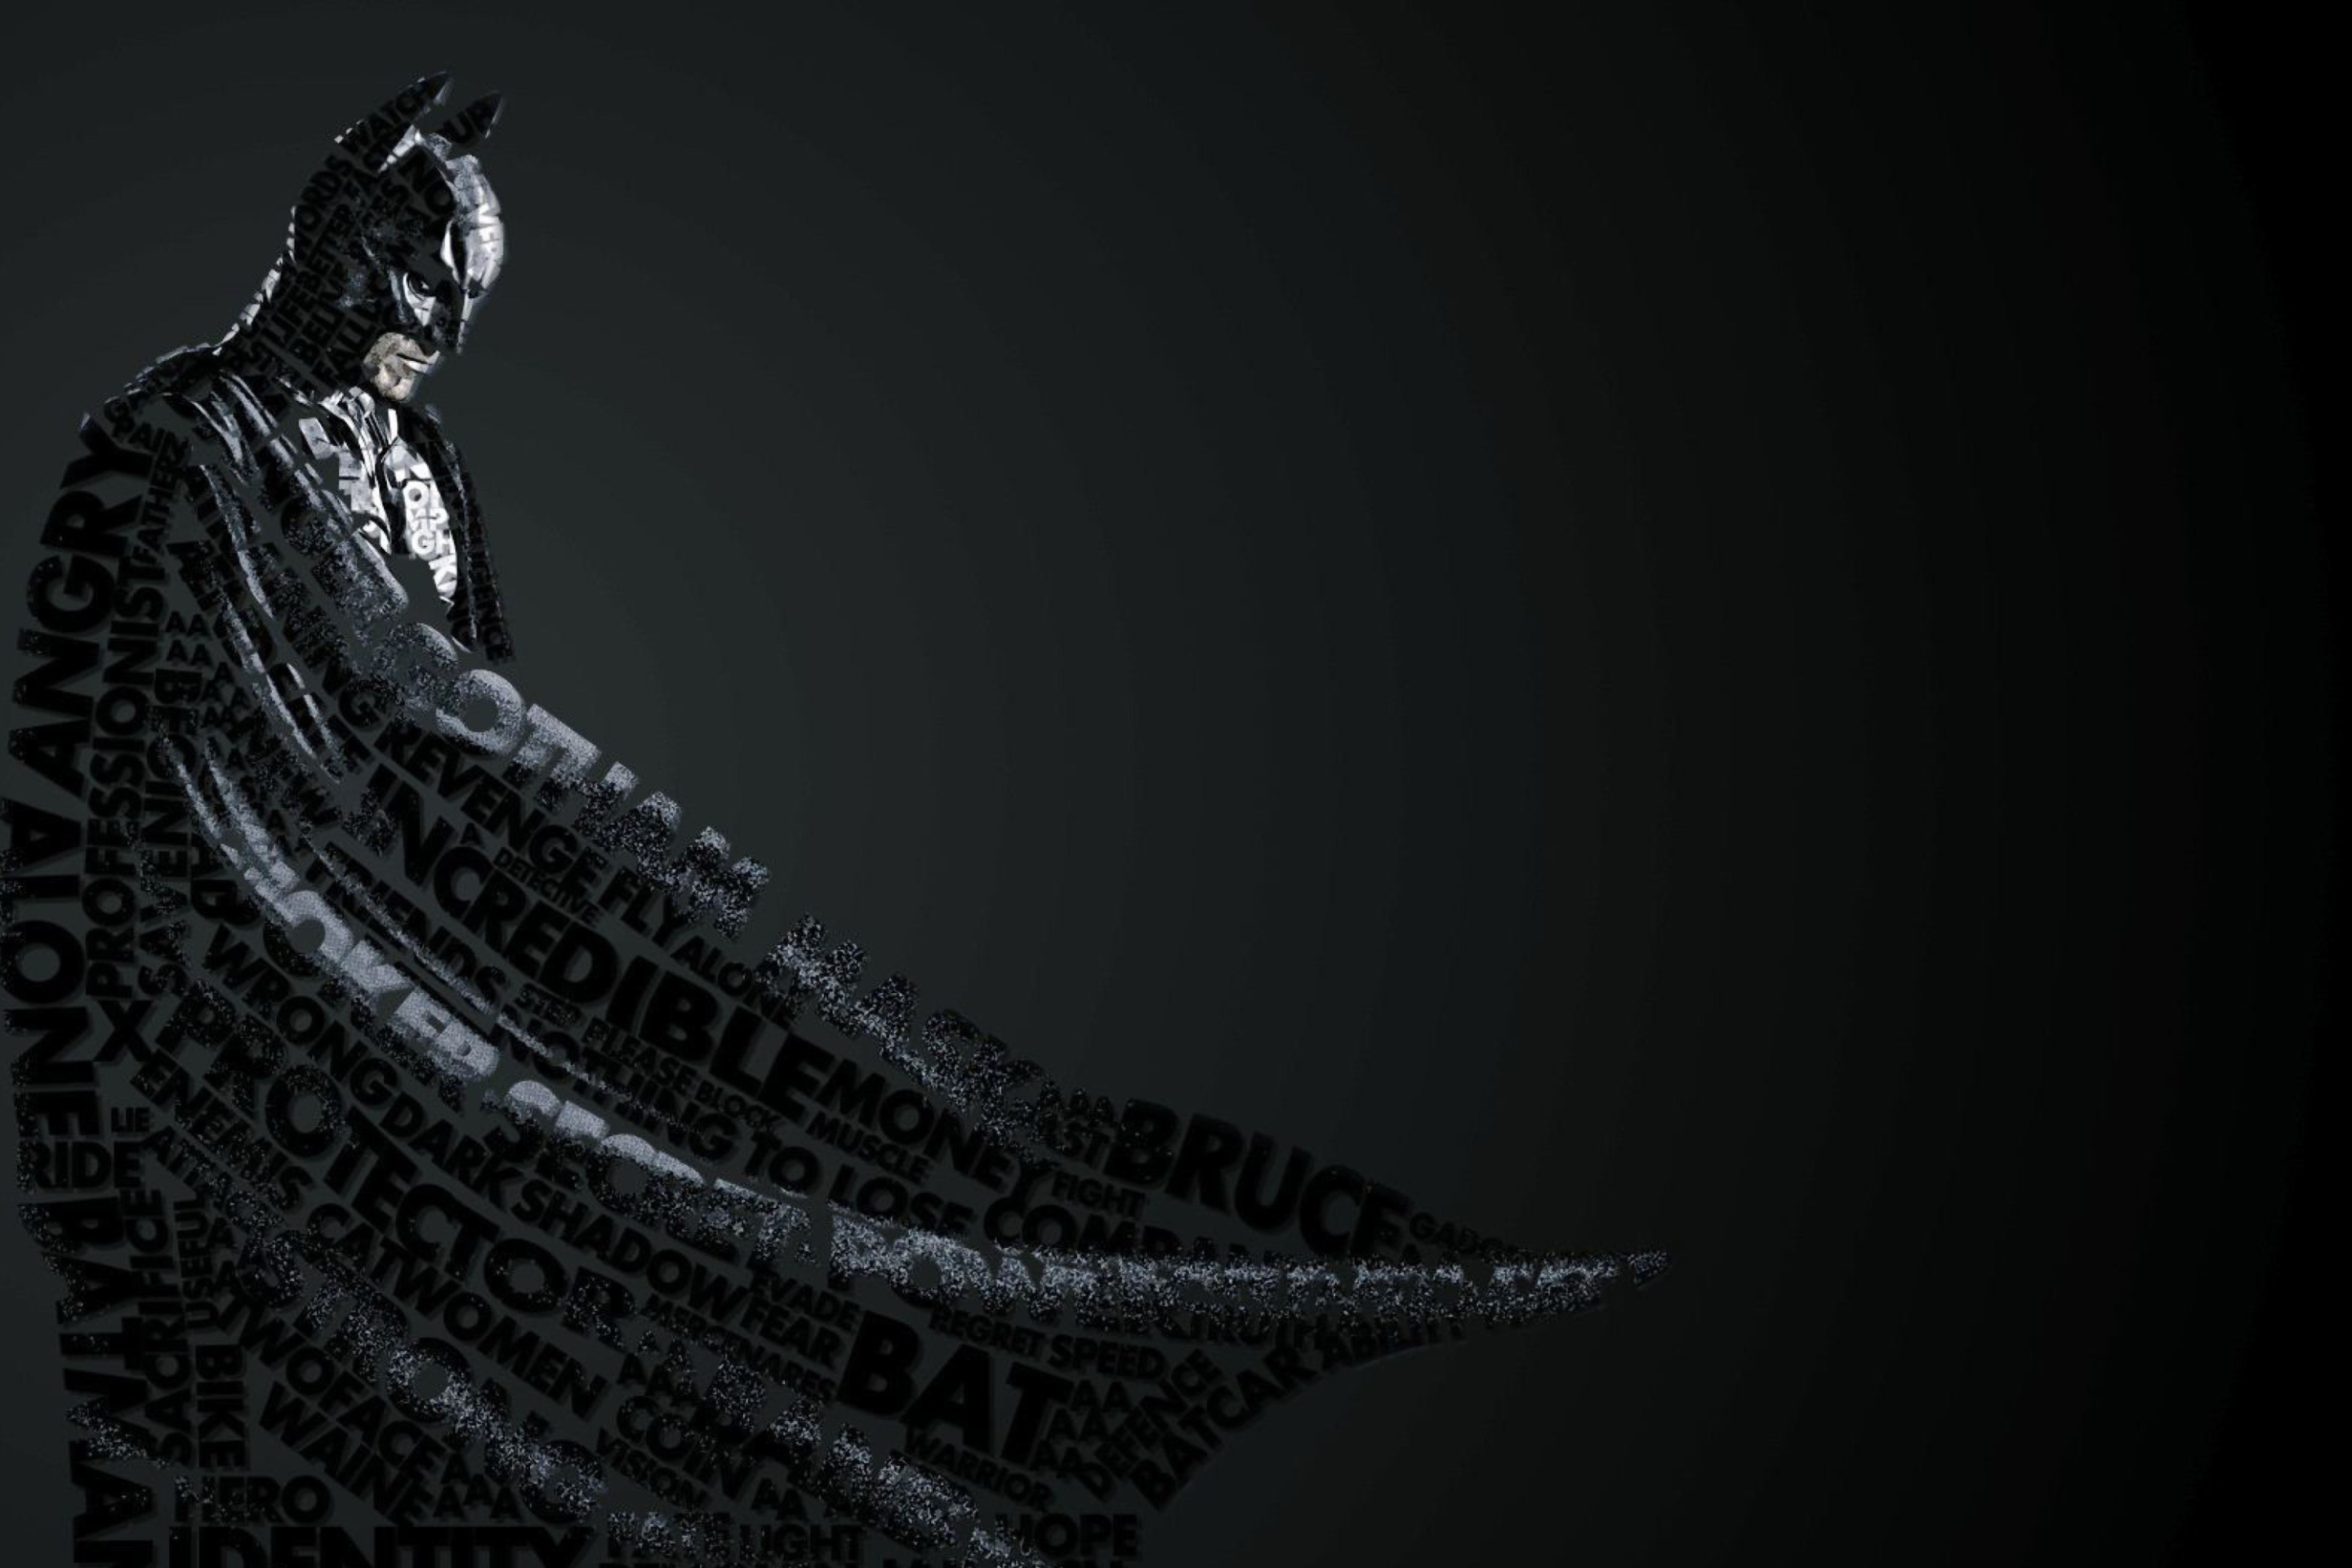 Das Batman Typography Wallpaper 2880x1920